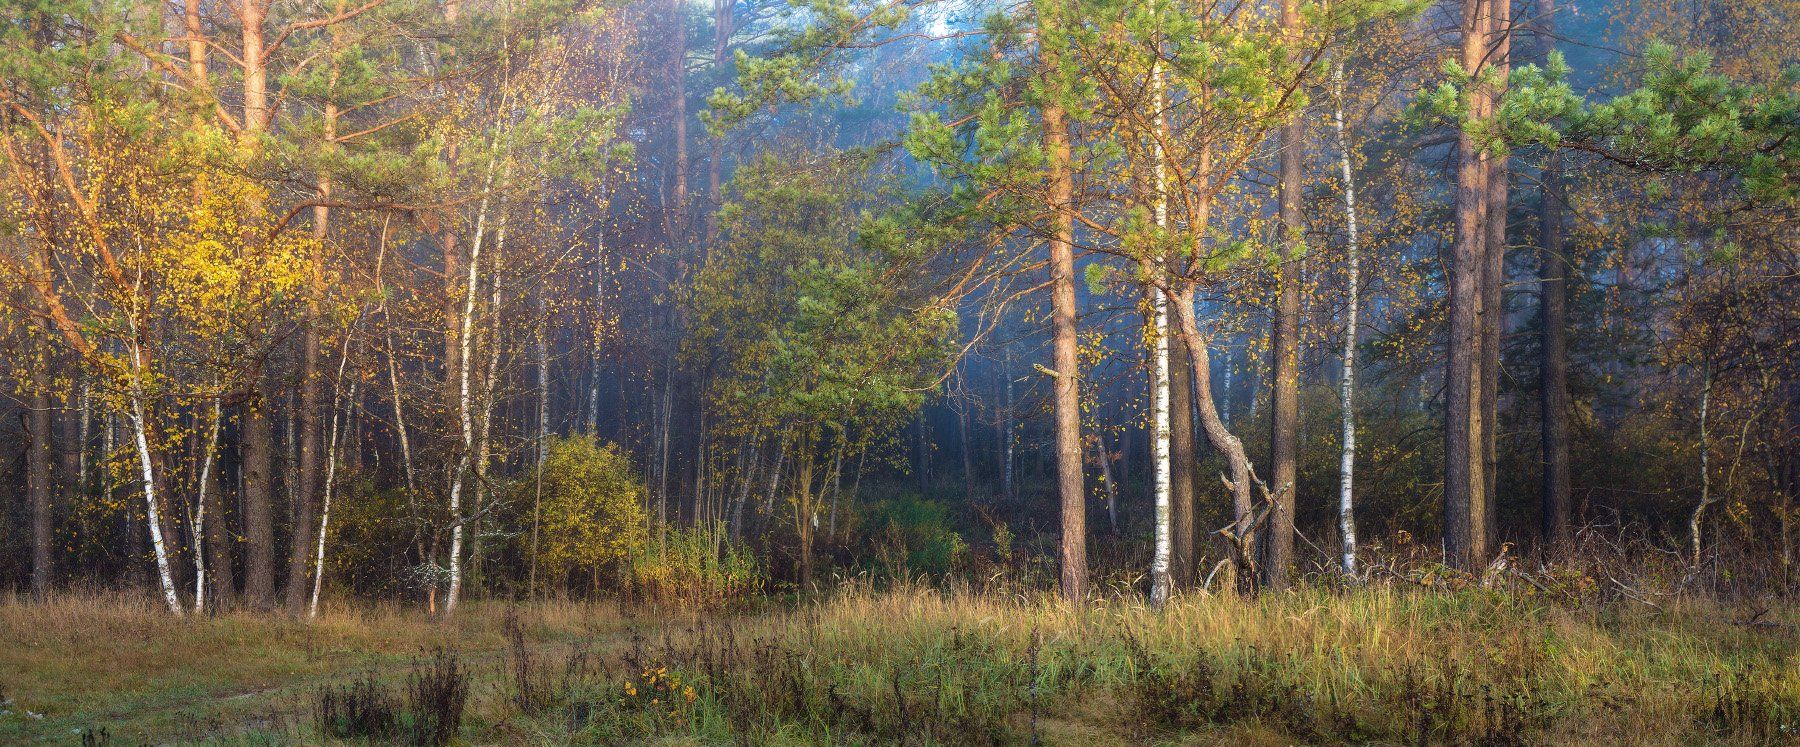 лес осень утро свет туман, Дмитрий Алексеев